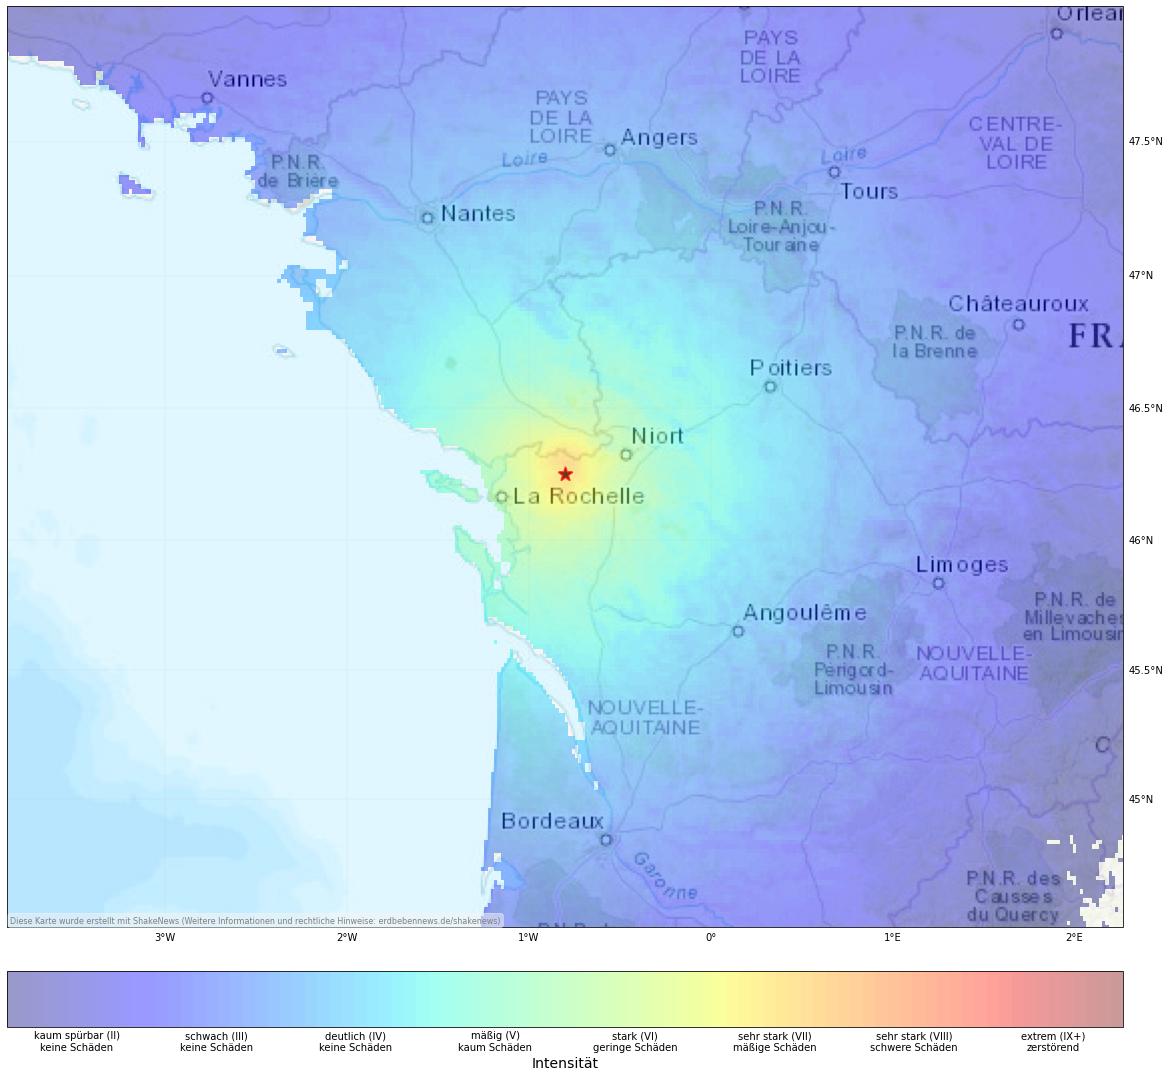 Shake map of Strong earthquake (M5.5) near La Rochelle, France